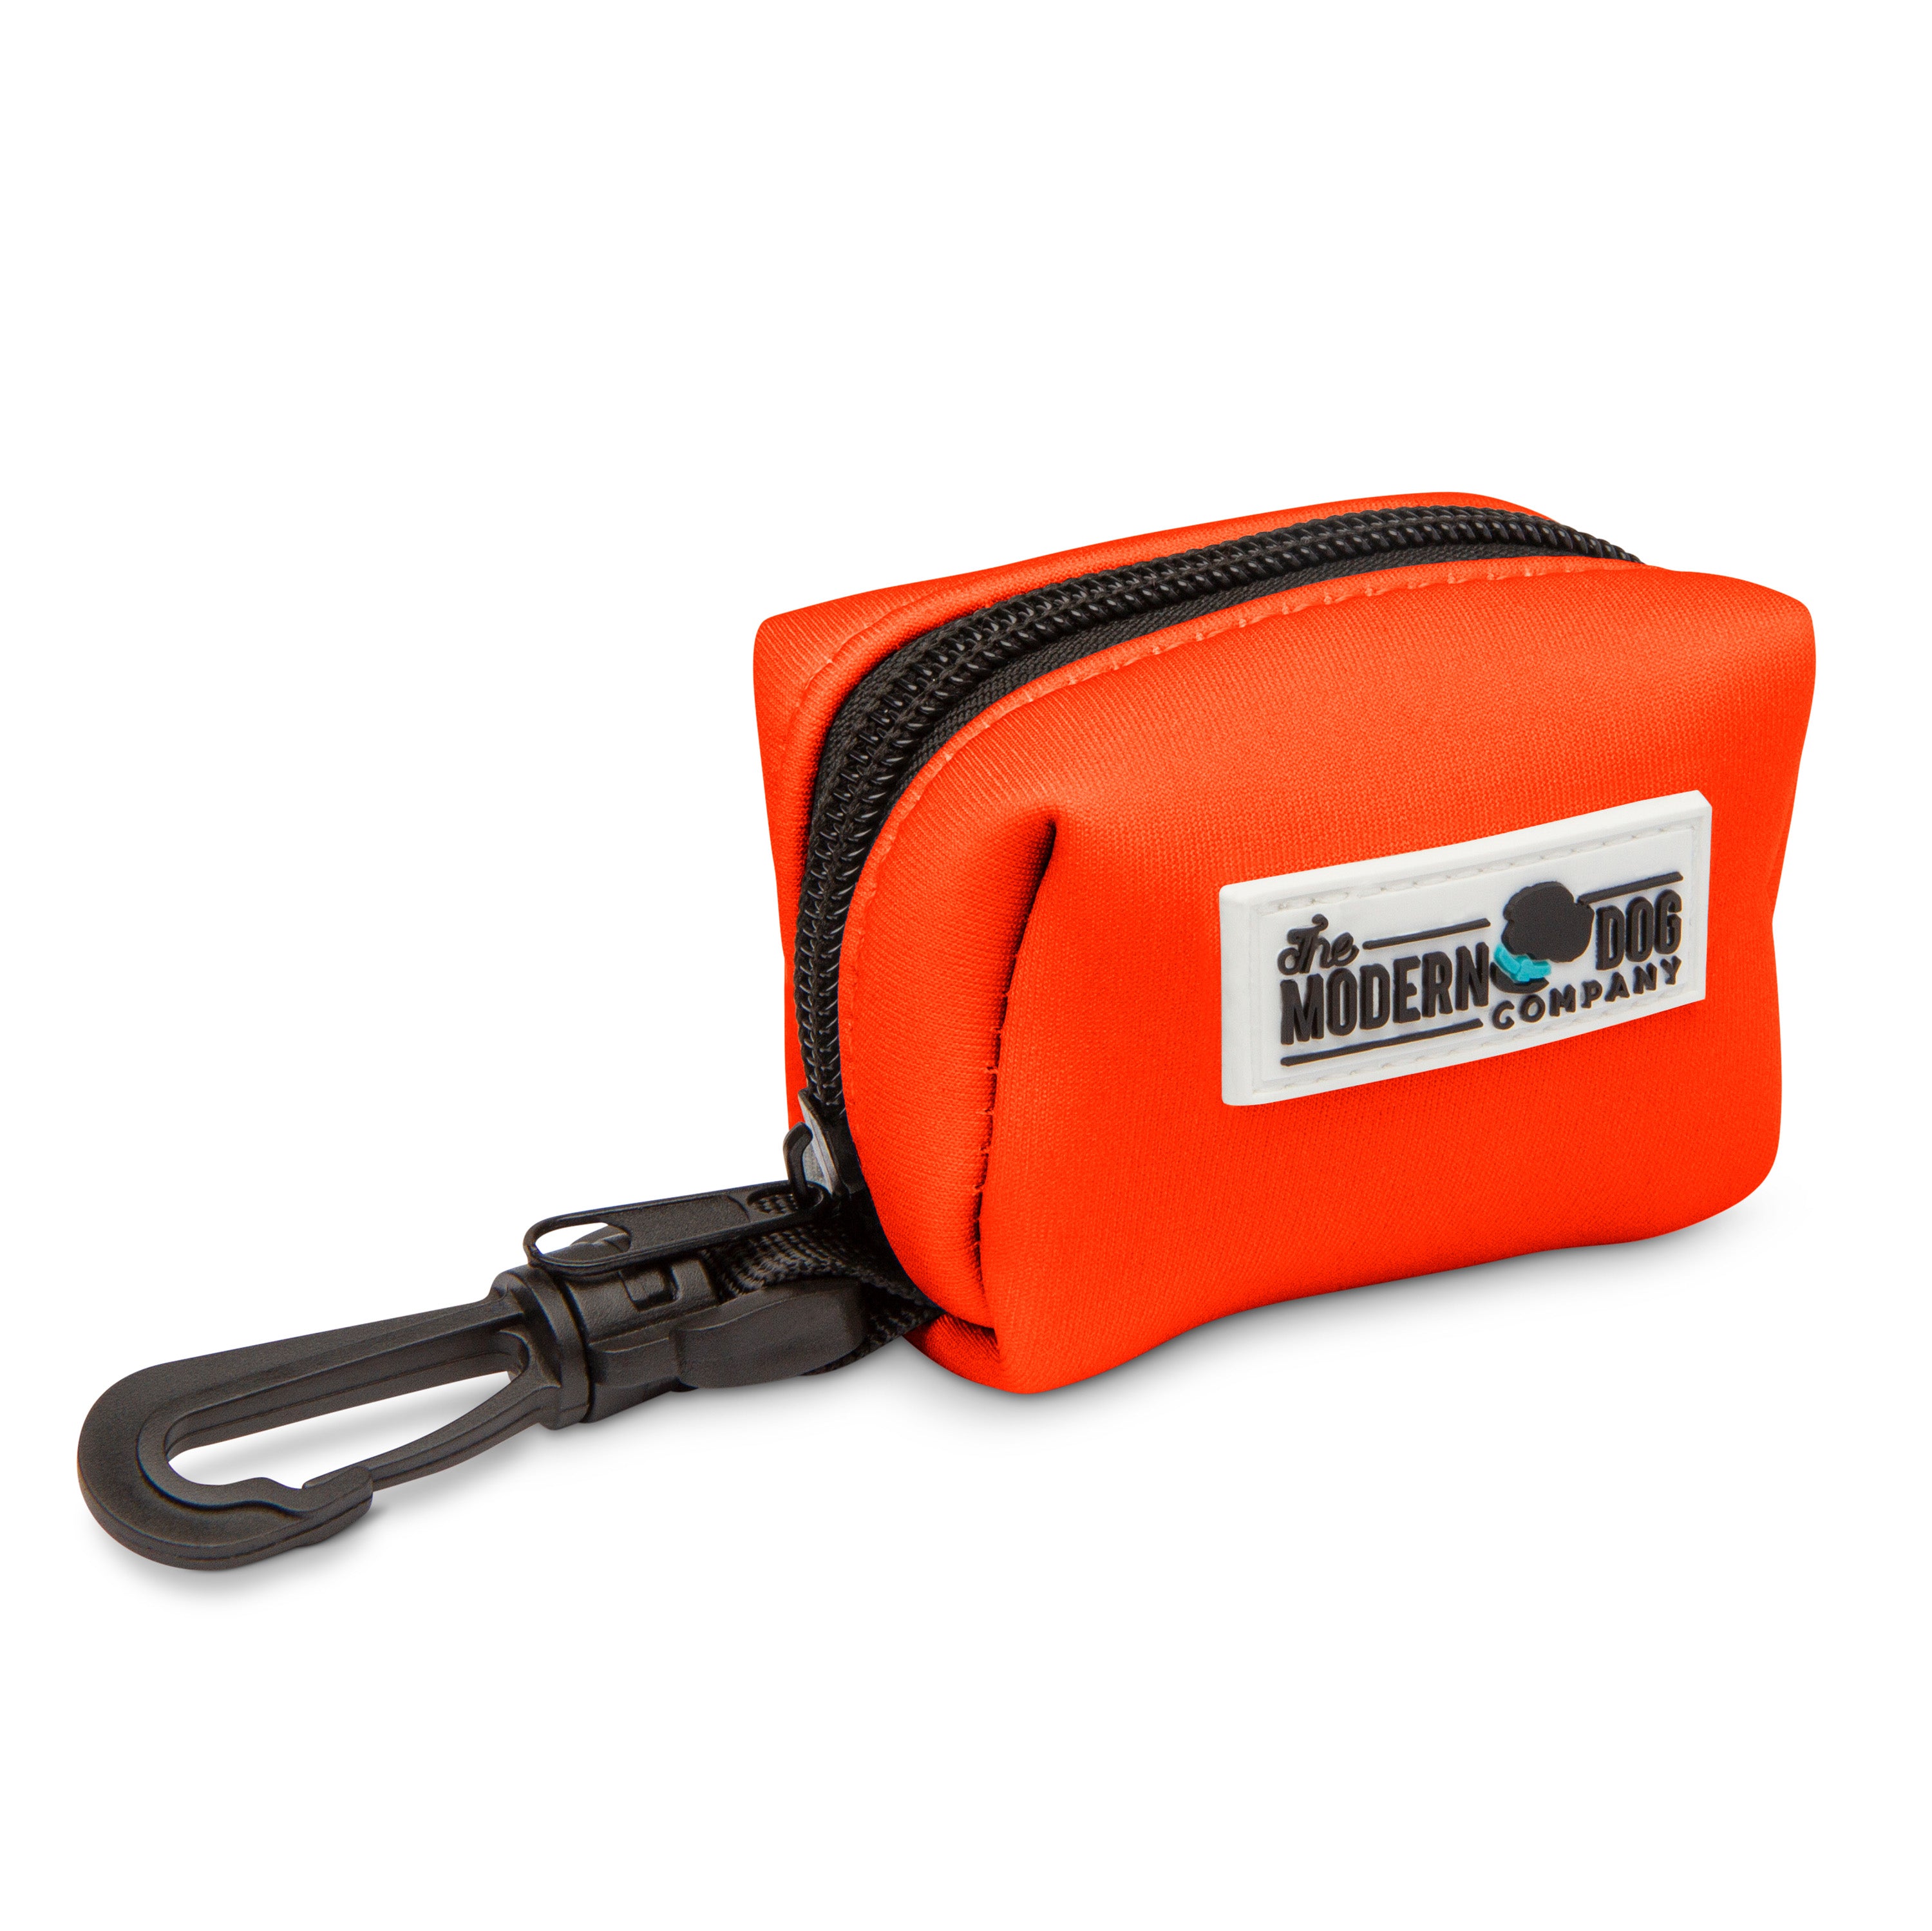 The Modern Dog Company - Neon Orange Poop Bag Holder